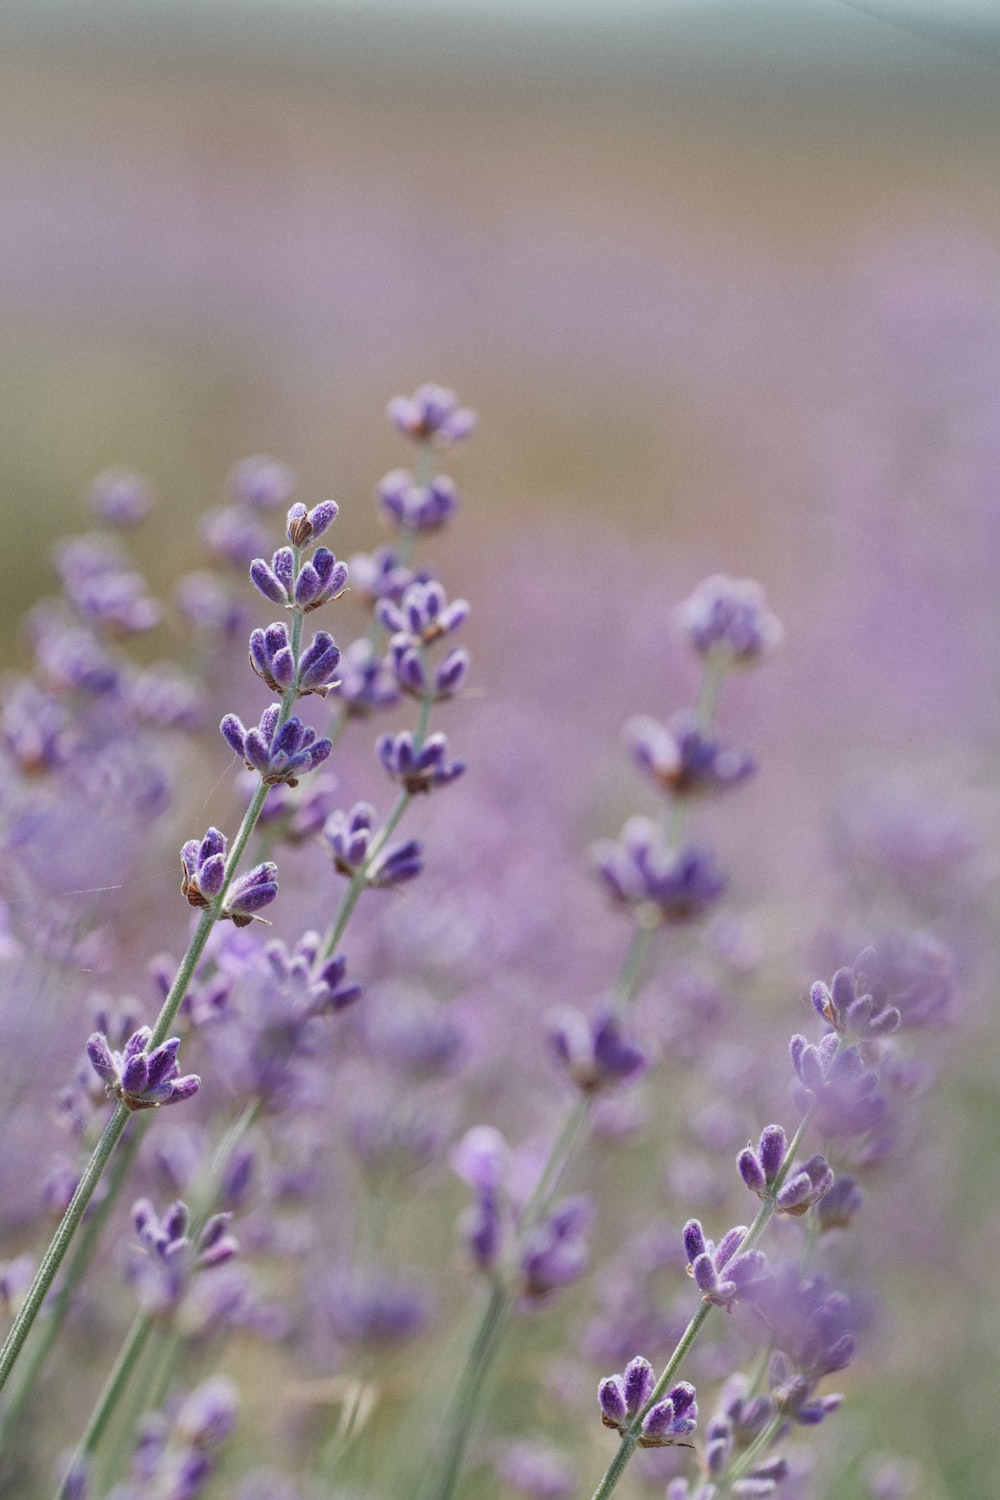 purple flower in tilt shift lens photo